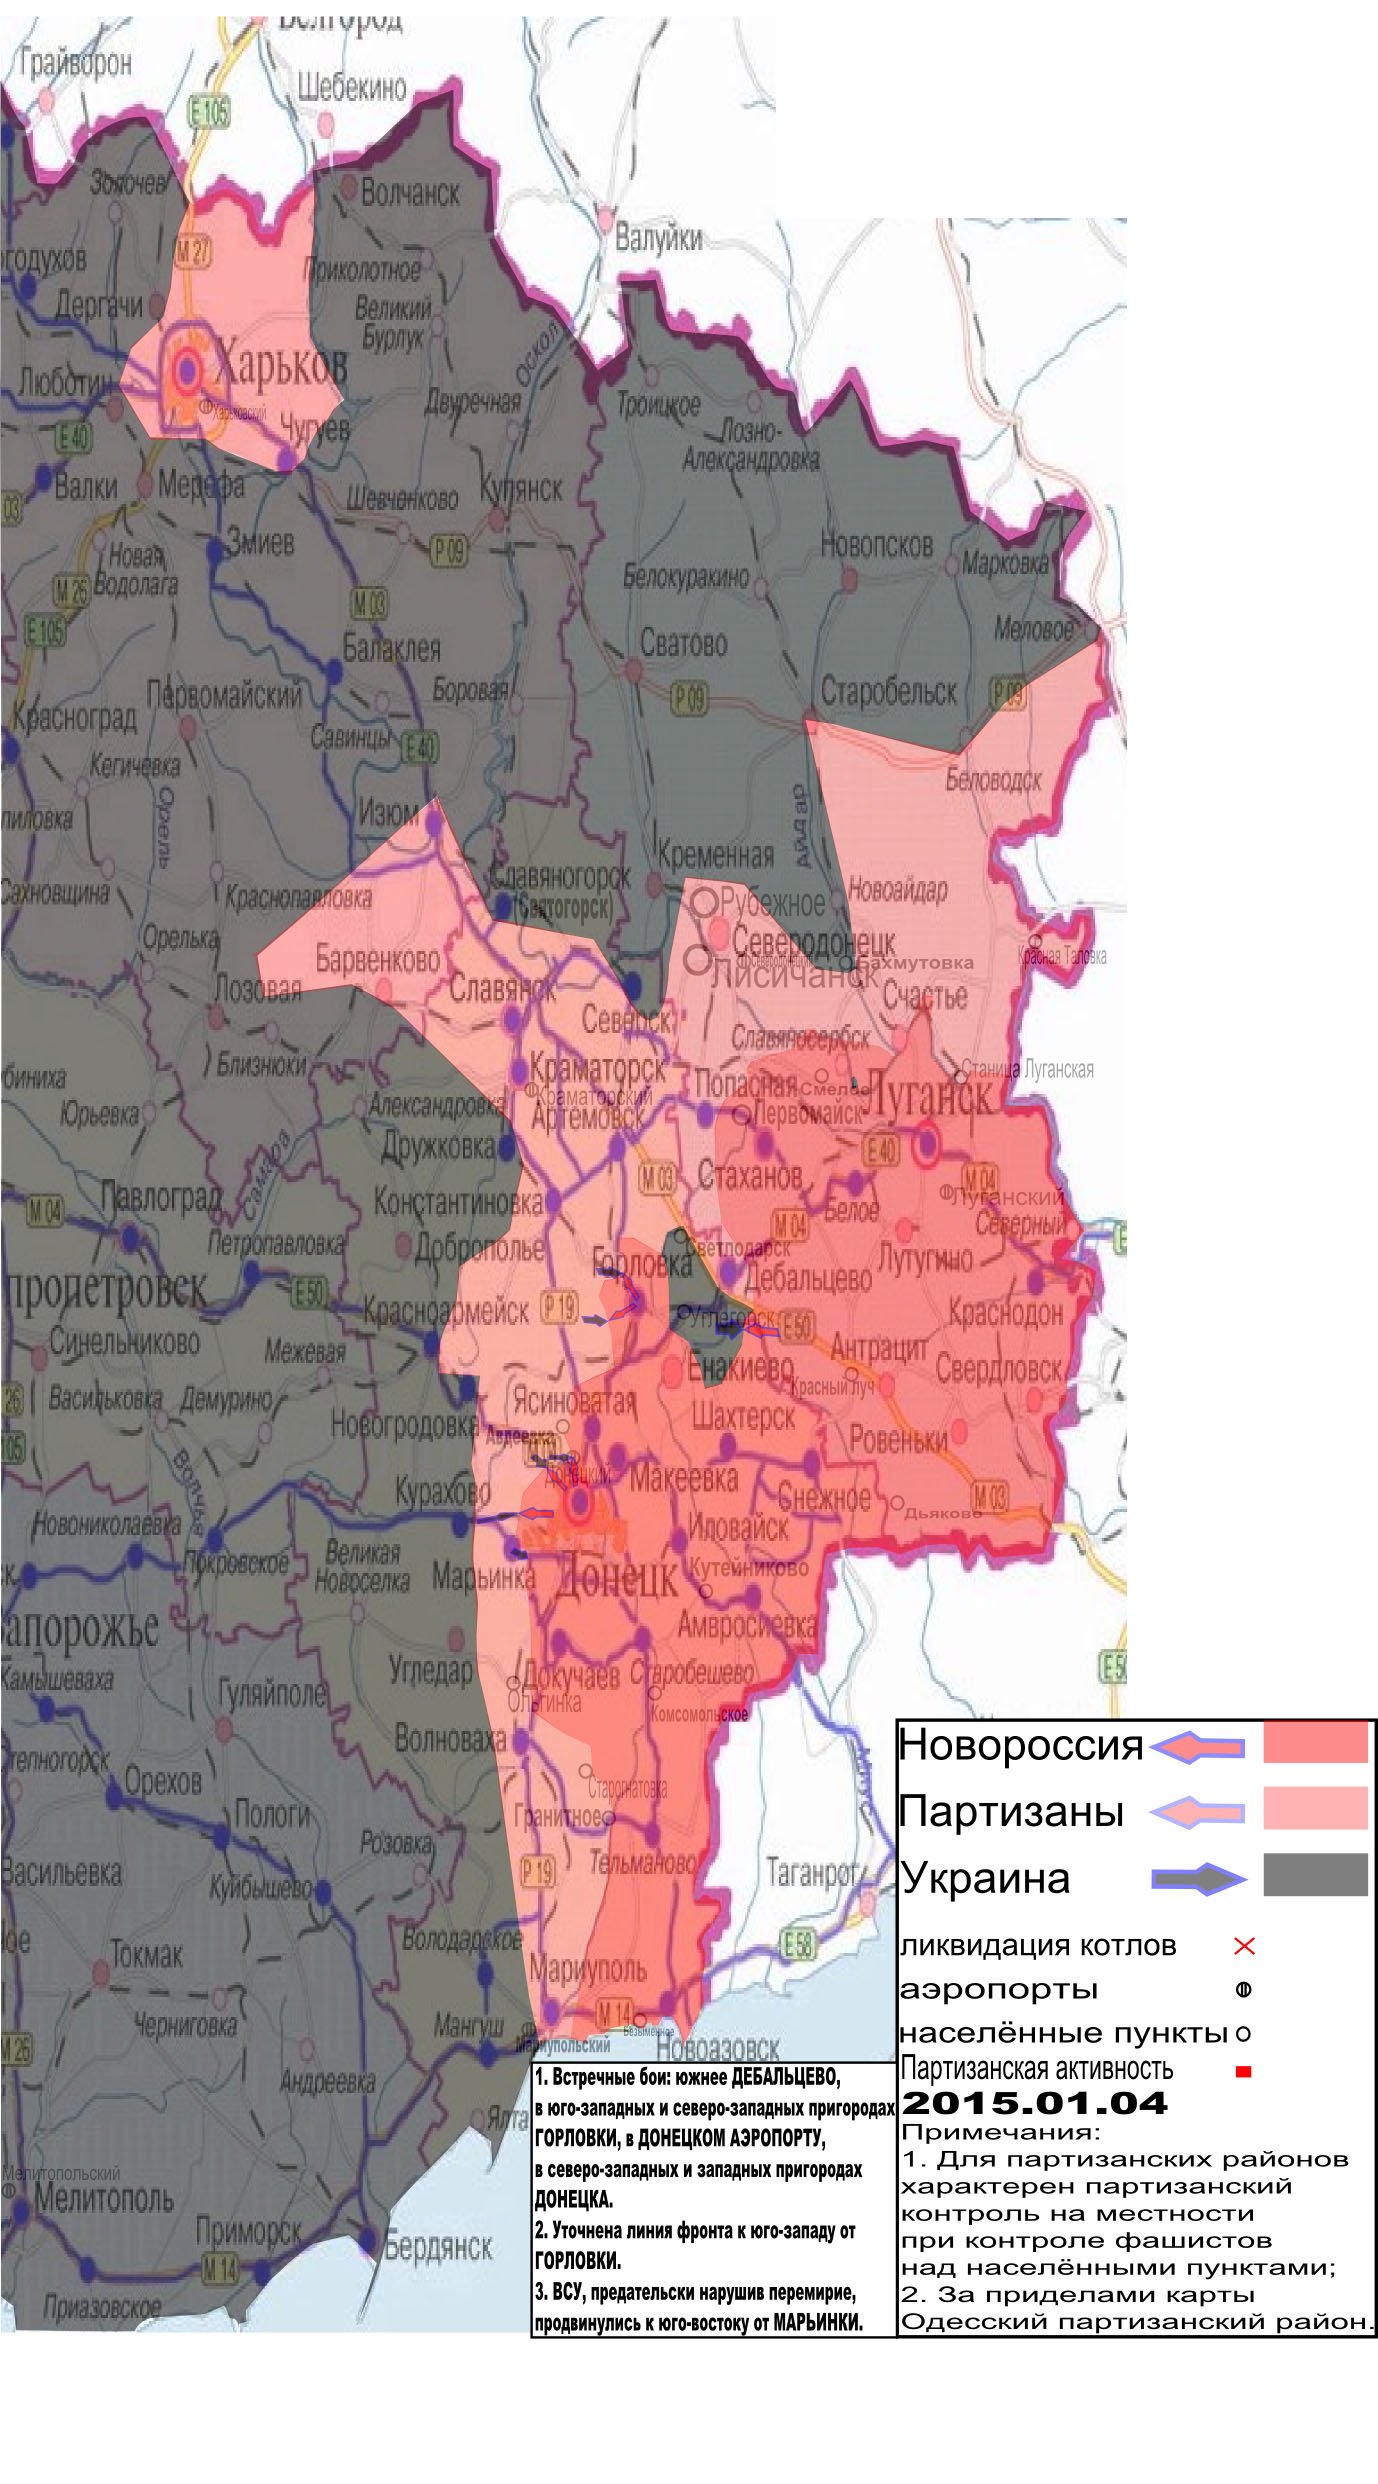 Карта боевых действий и событий в Новороссии с обозначением зон партизанской активности за 4 января 2015 года